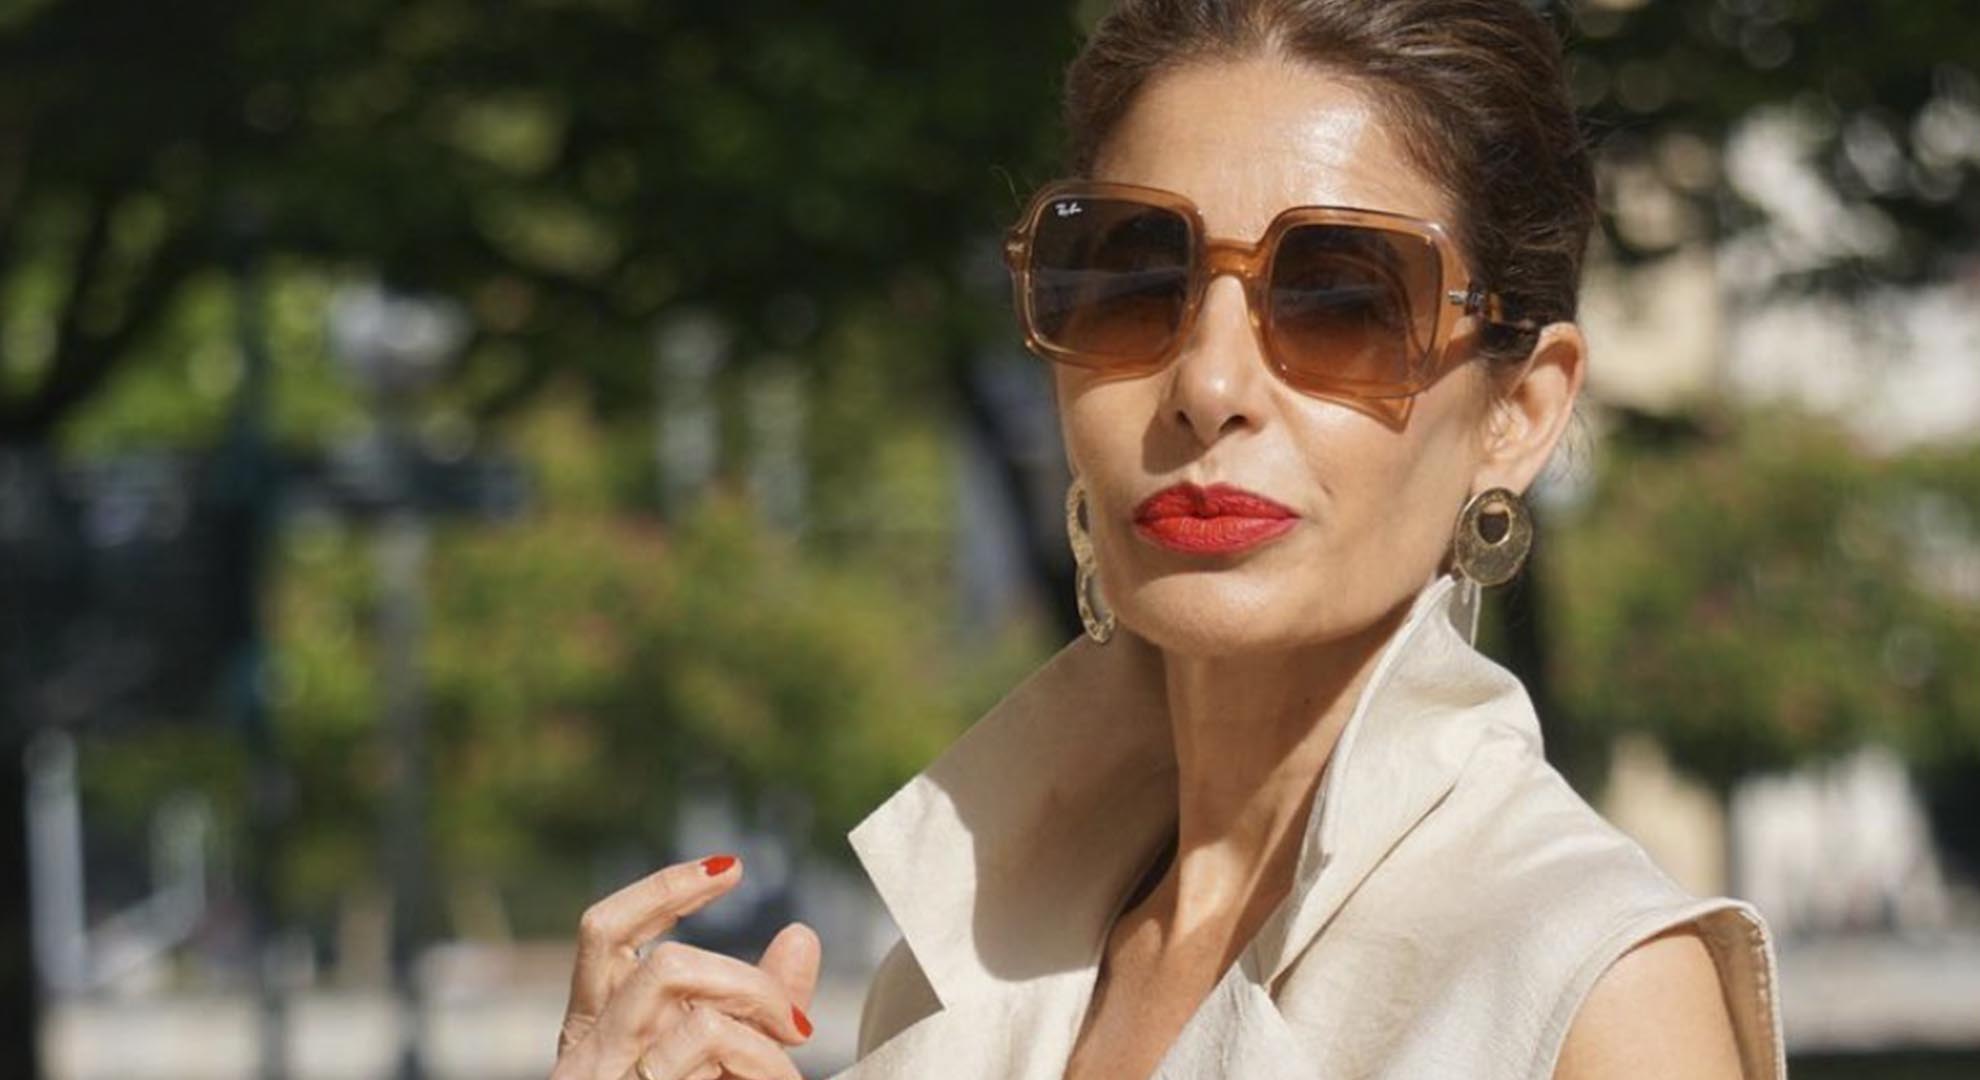 Estilo sin edad: Las prendas de lino son el secreto de las mujeres mayores de 50 para lucir elegantes en verano